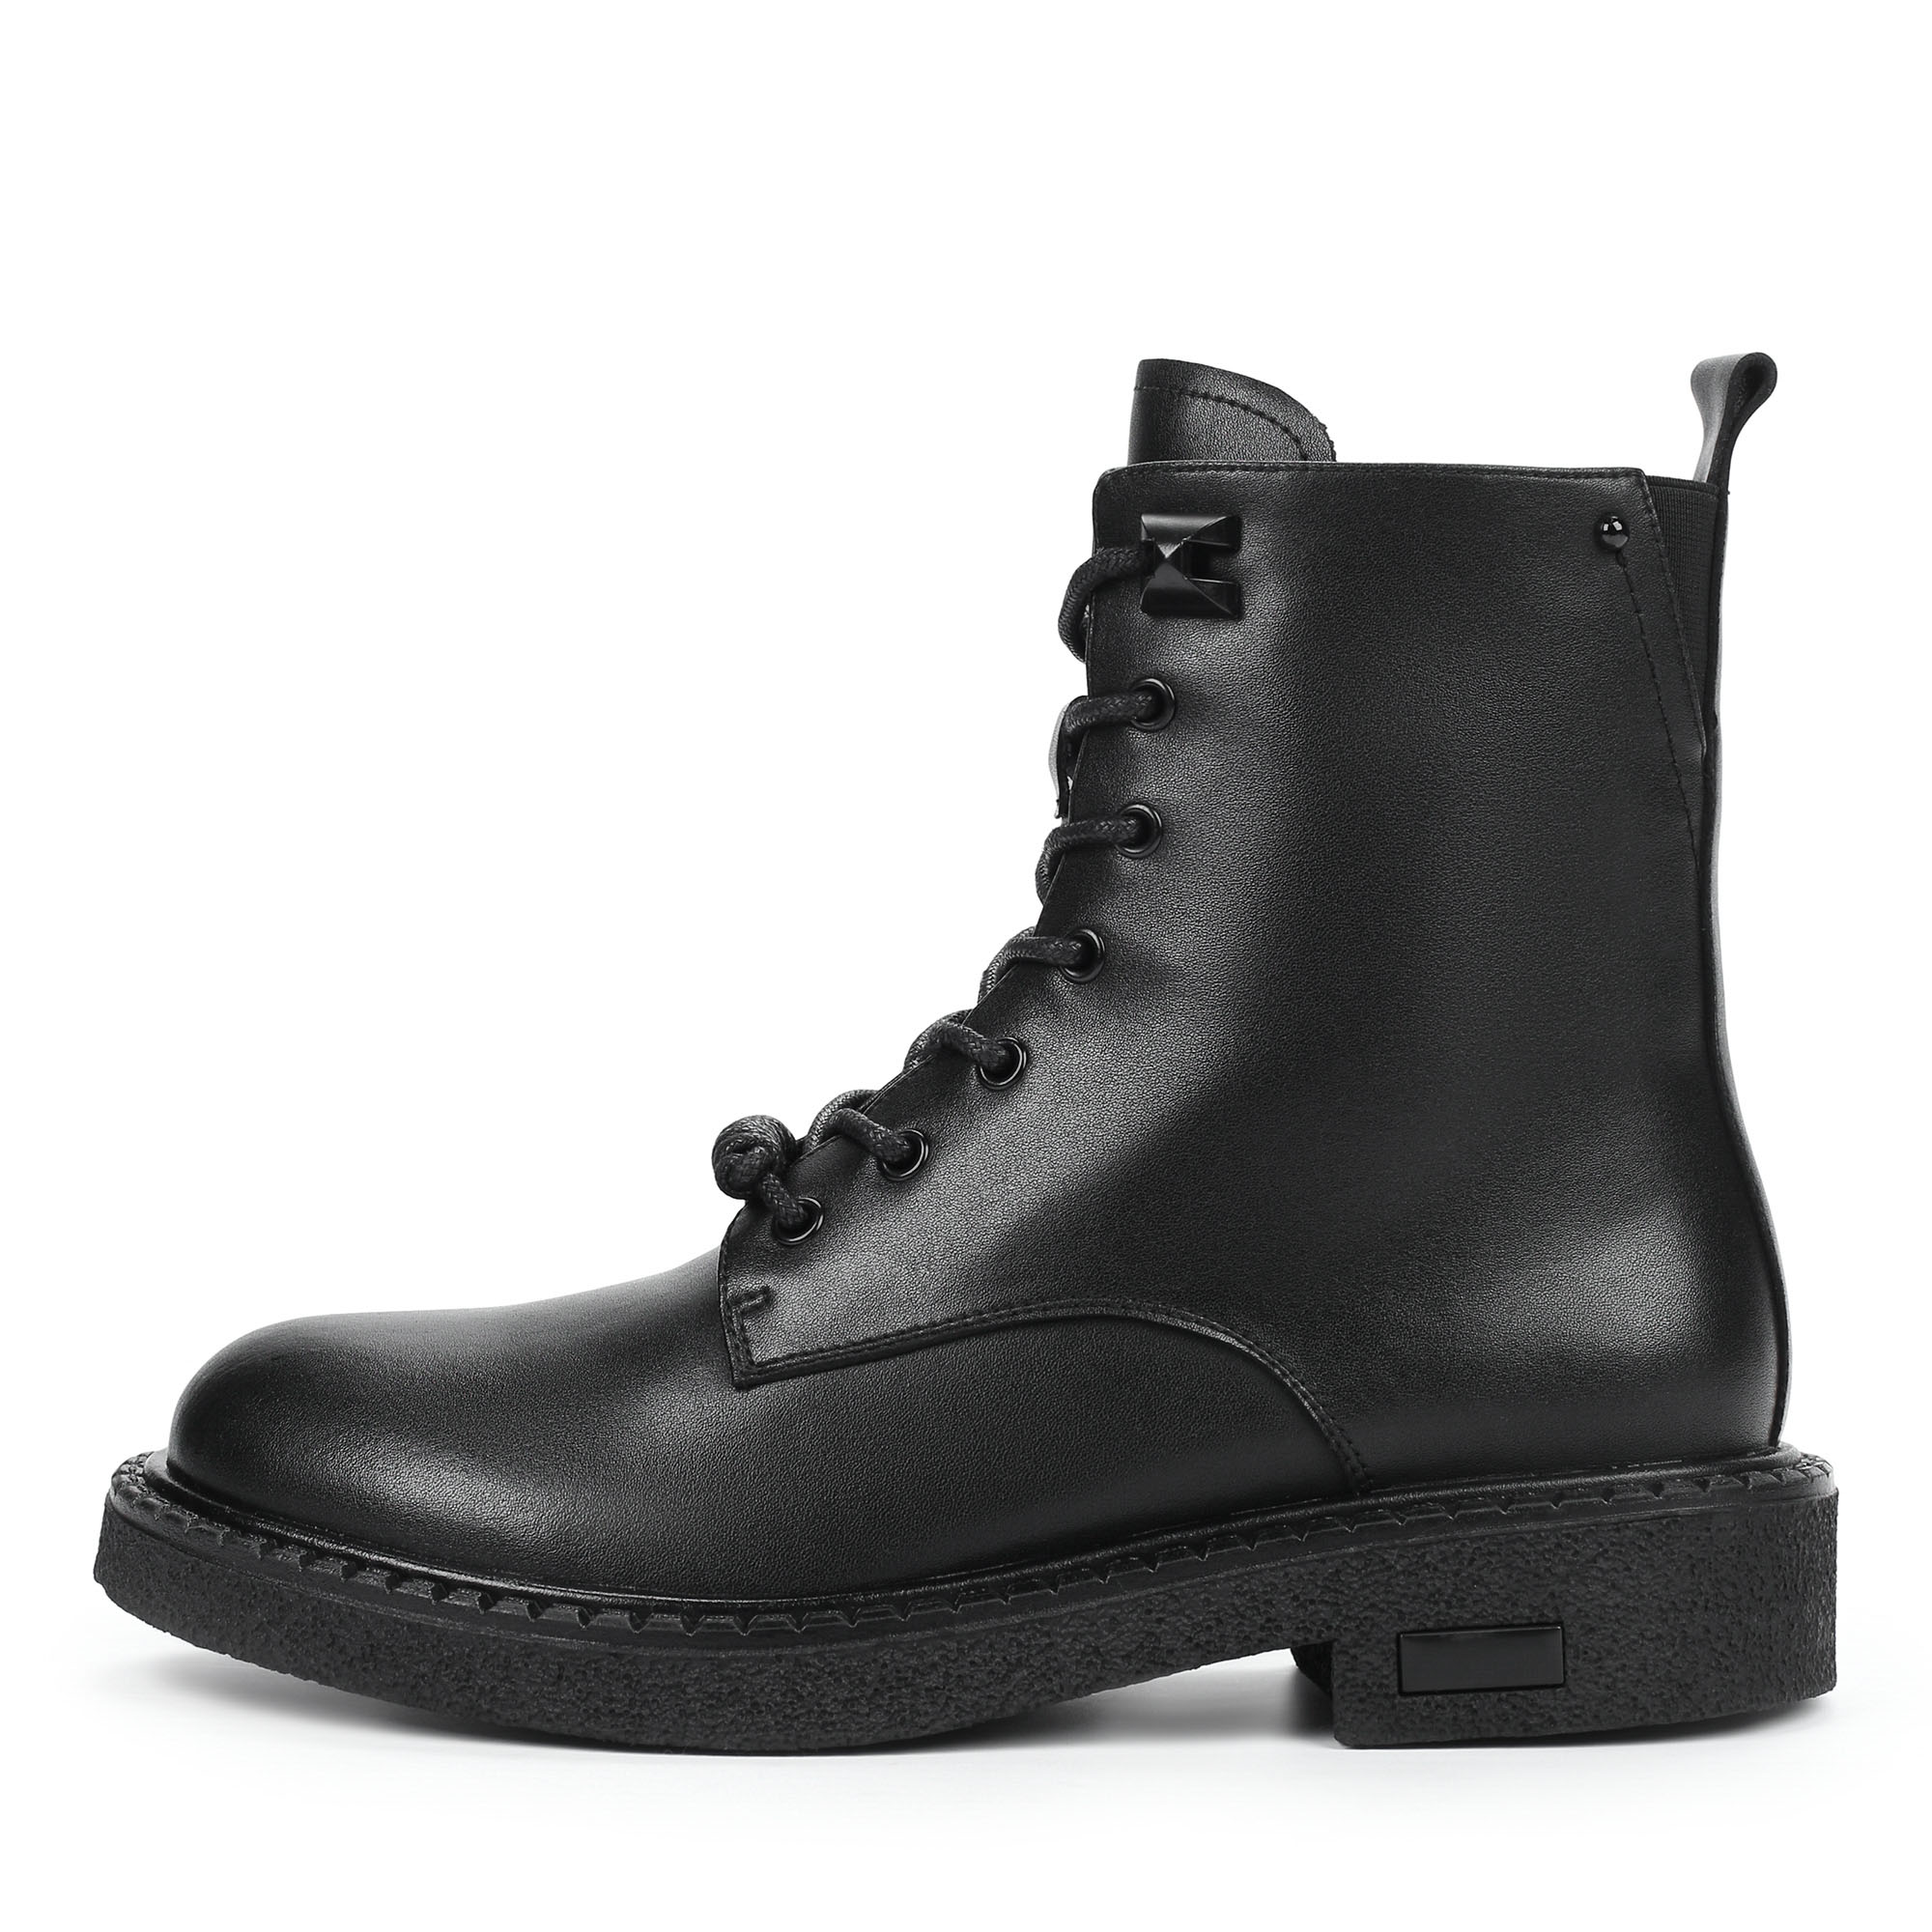 Ботинки Thomas Munz 195-040A-5602, цвет черный, размер 36 - фото 1